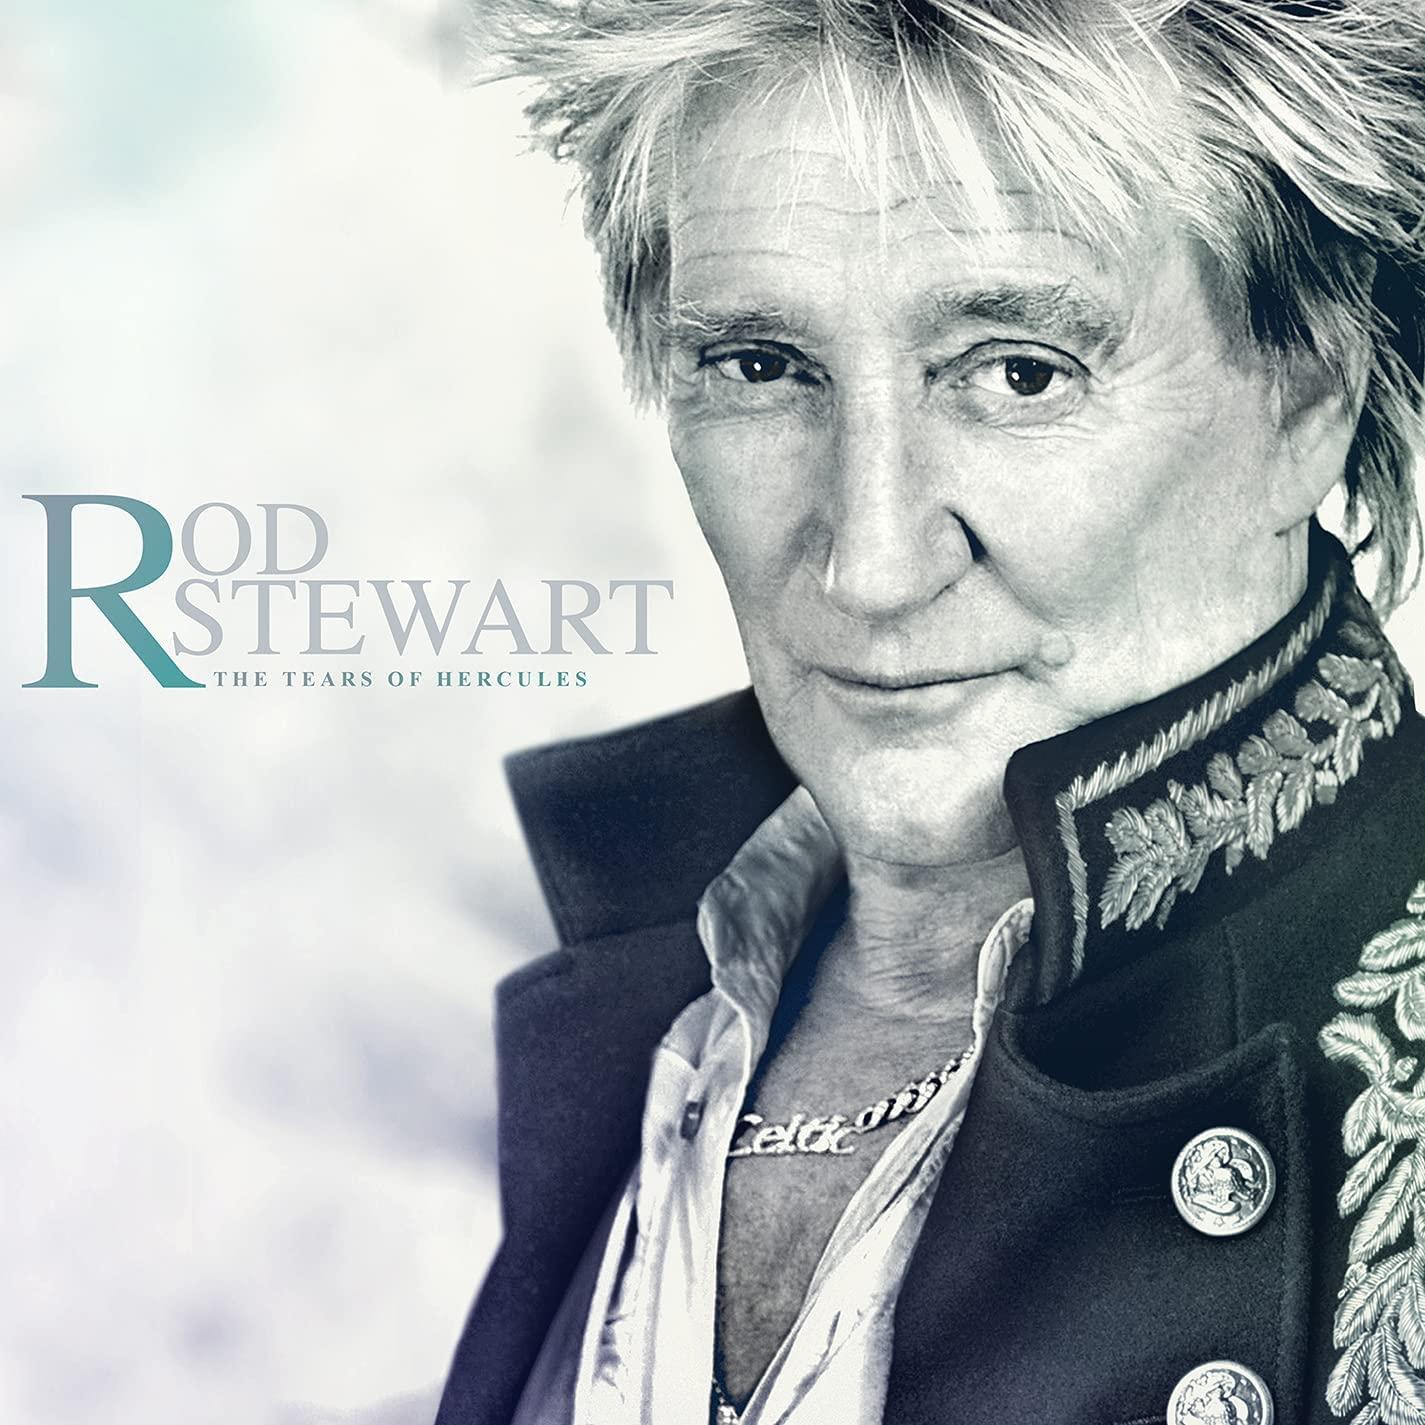 Rod Stewart - The Tears of Hercules (2021) LP